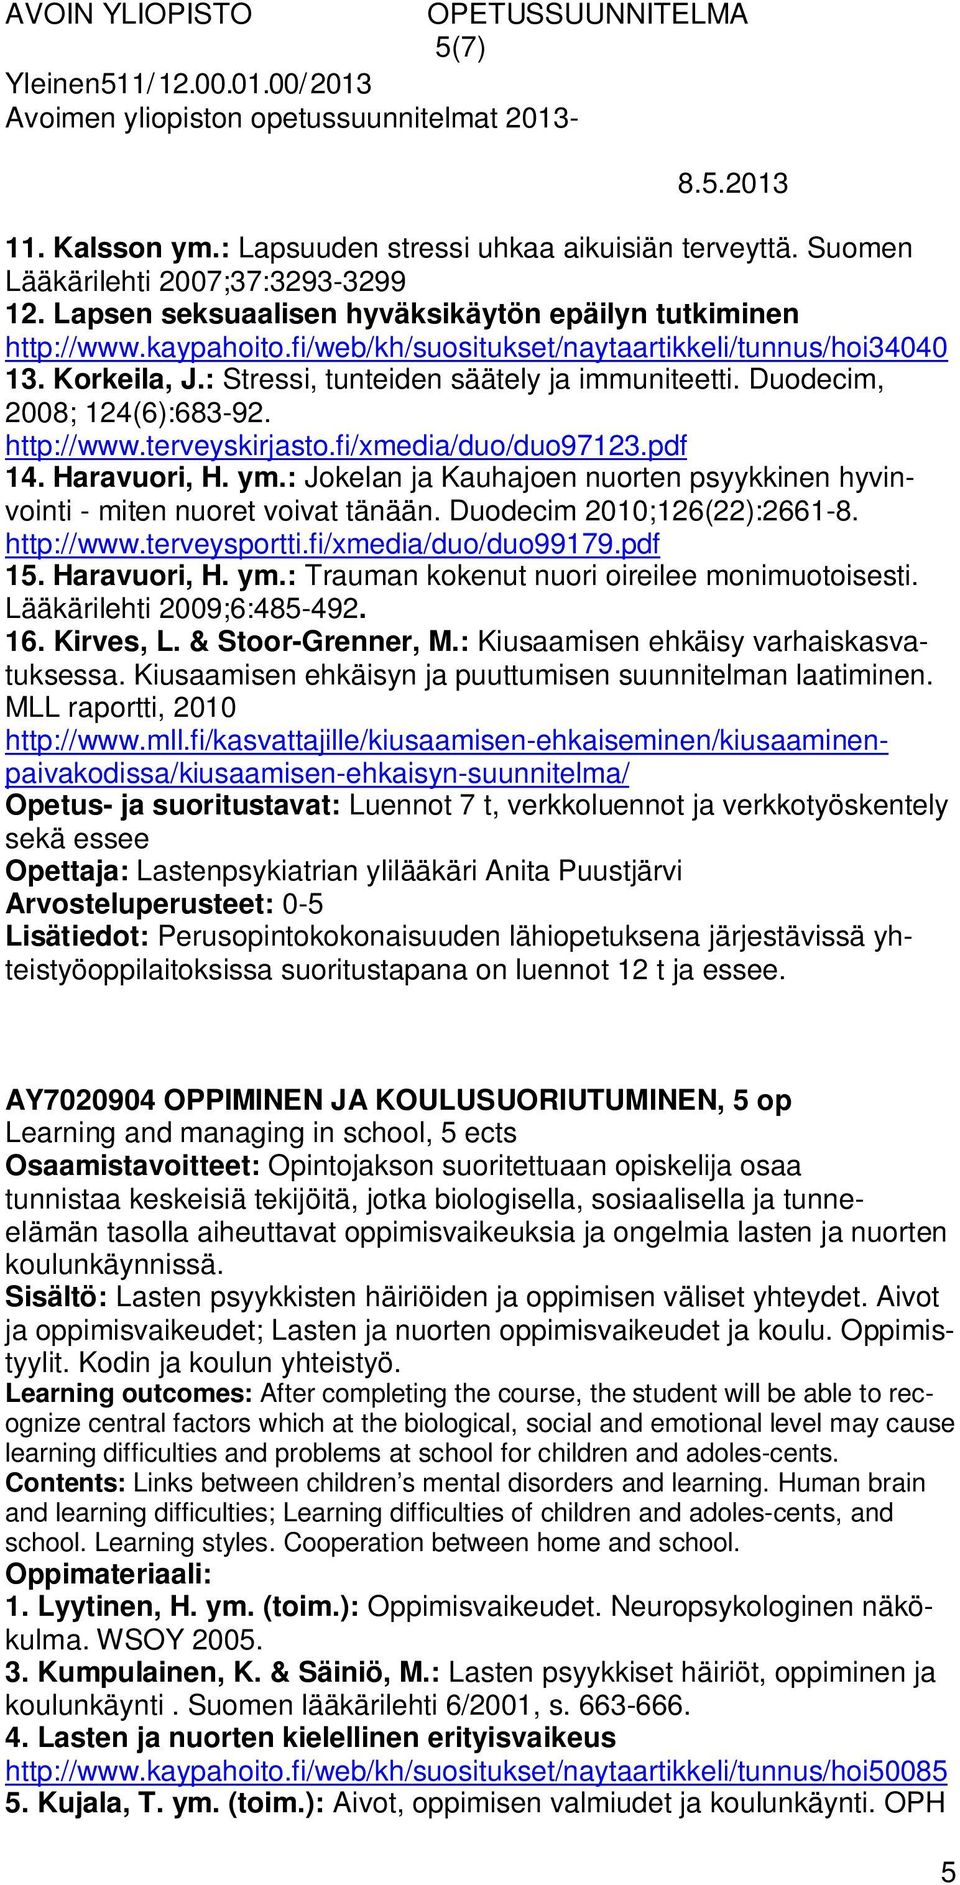 pdf 14. Haravuori, H. ym.: Jokelan ja Kauhajoen nuorten psyykkinen hyvinvointi - miten nuoret voivat tänään. Duodecim 2010;126(22):2661-8. http://www.terveysportti.fi/xmedia/duo/duo99179.pdf 15.